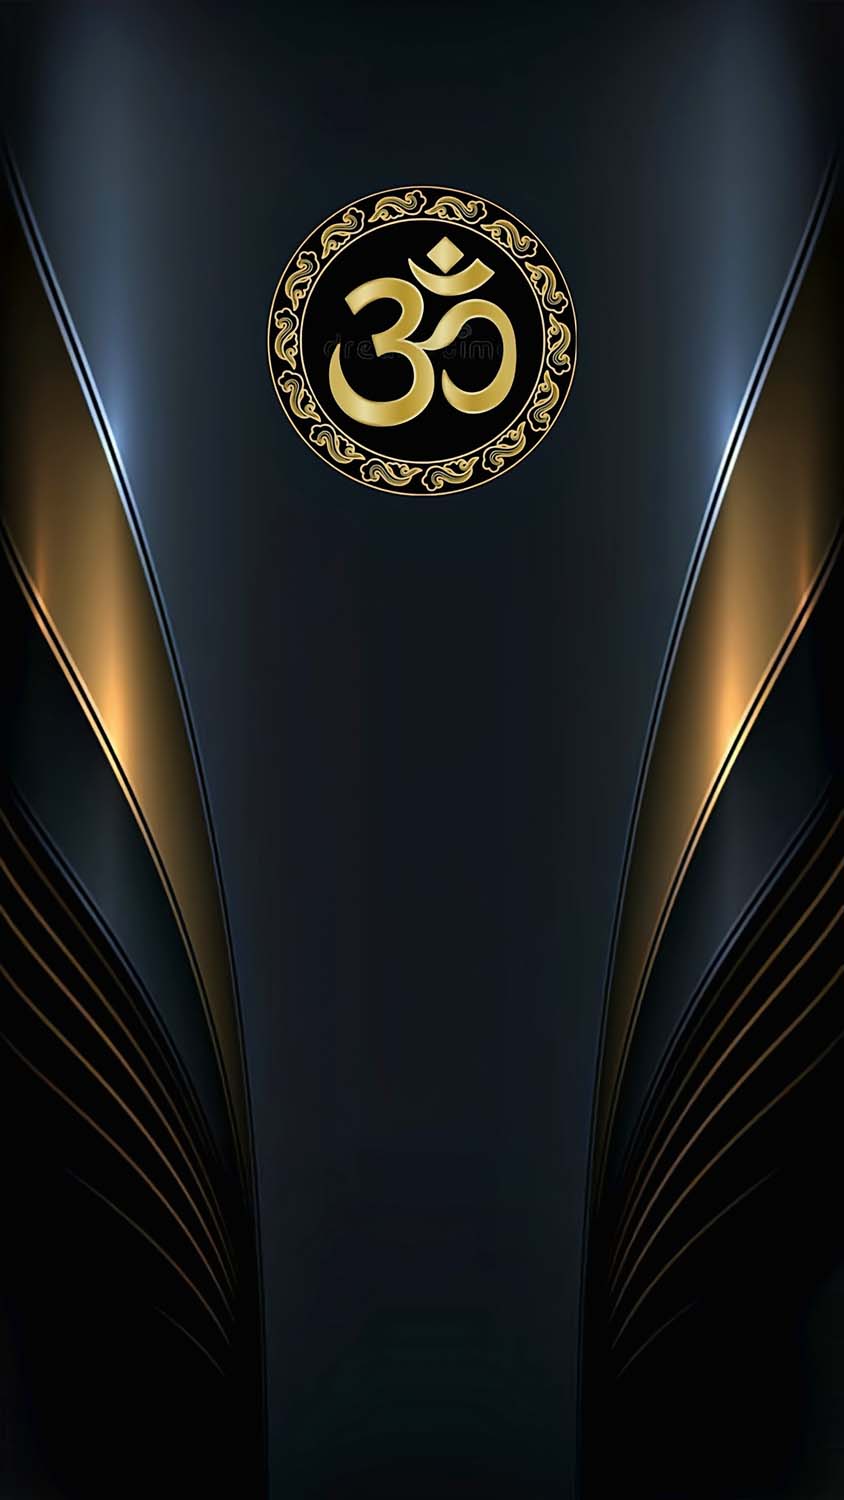 Abstract Hindu Symbol iPhone Wallpaper 4K